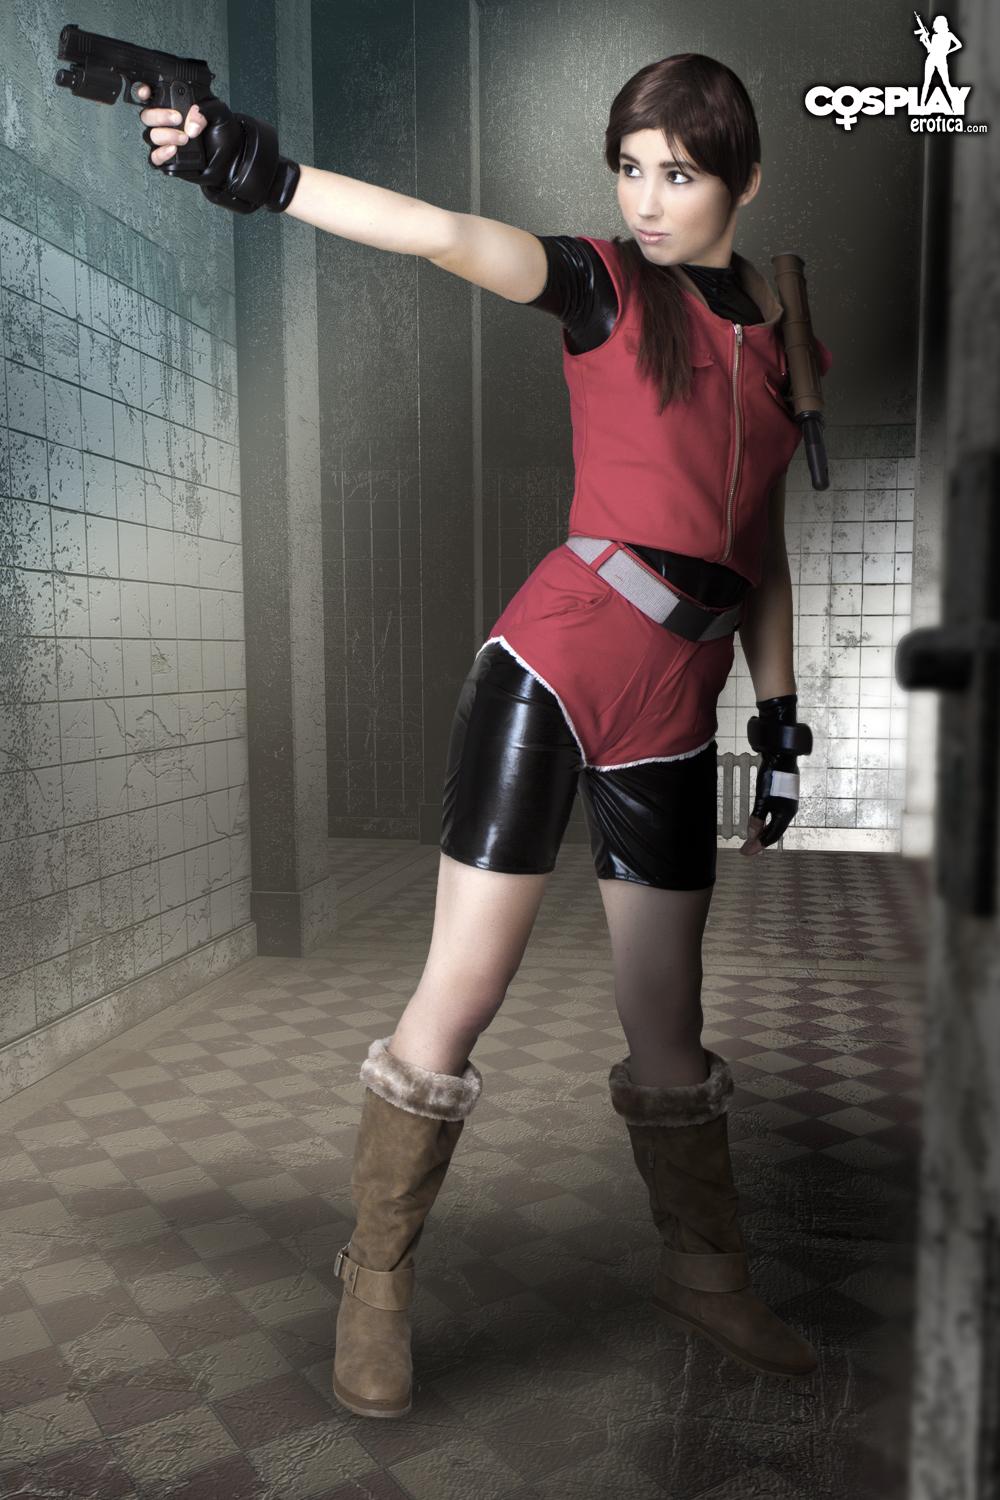 Cosplayerin Stacy verkleidet sich als Claire aus Resident Evil
 #60007821